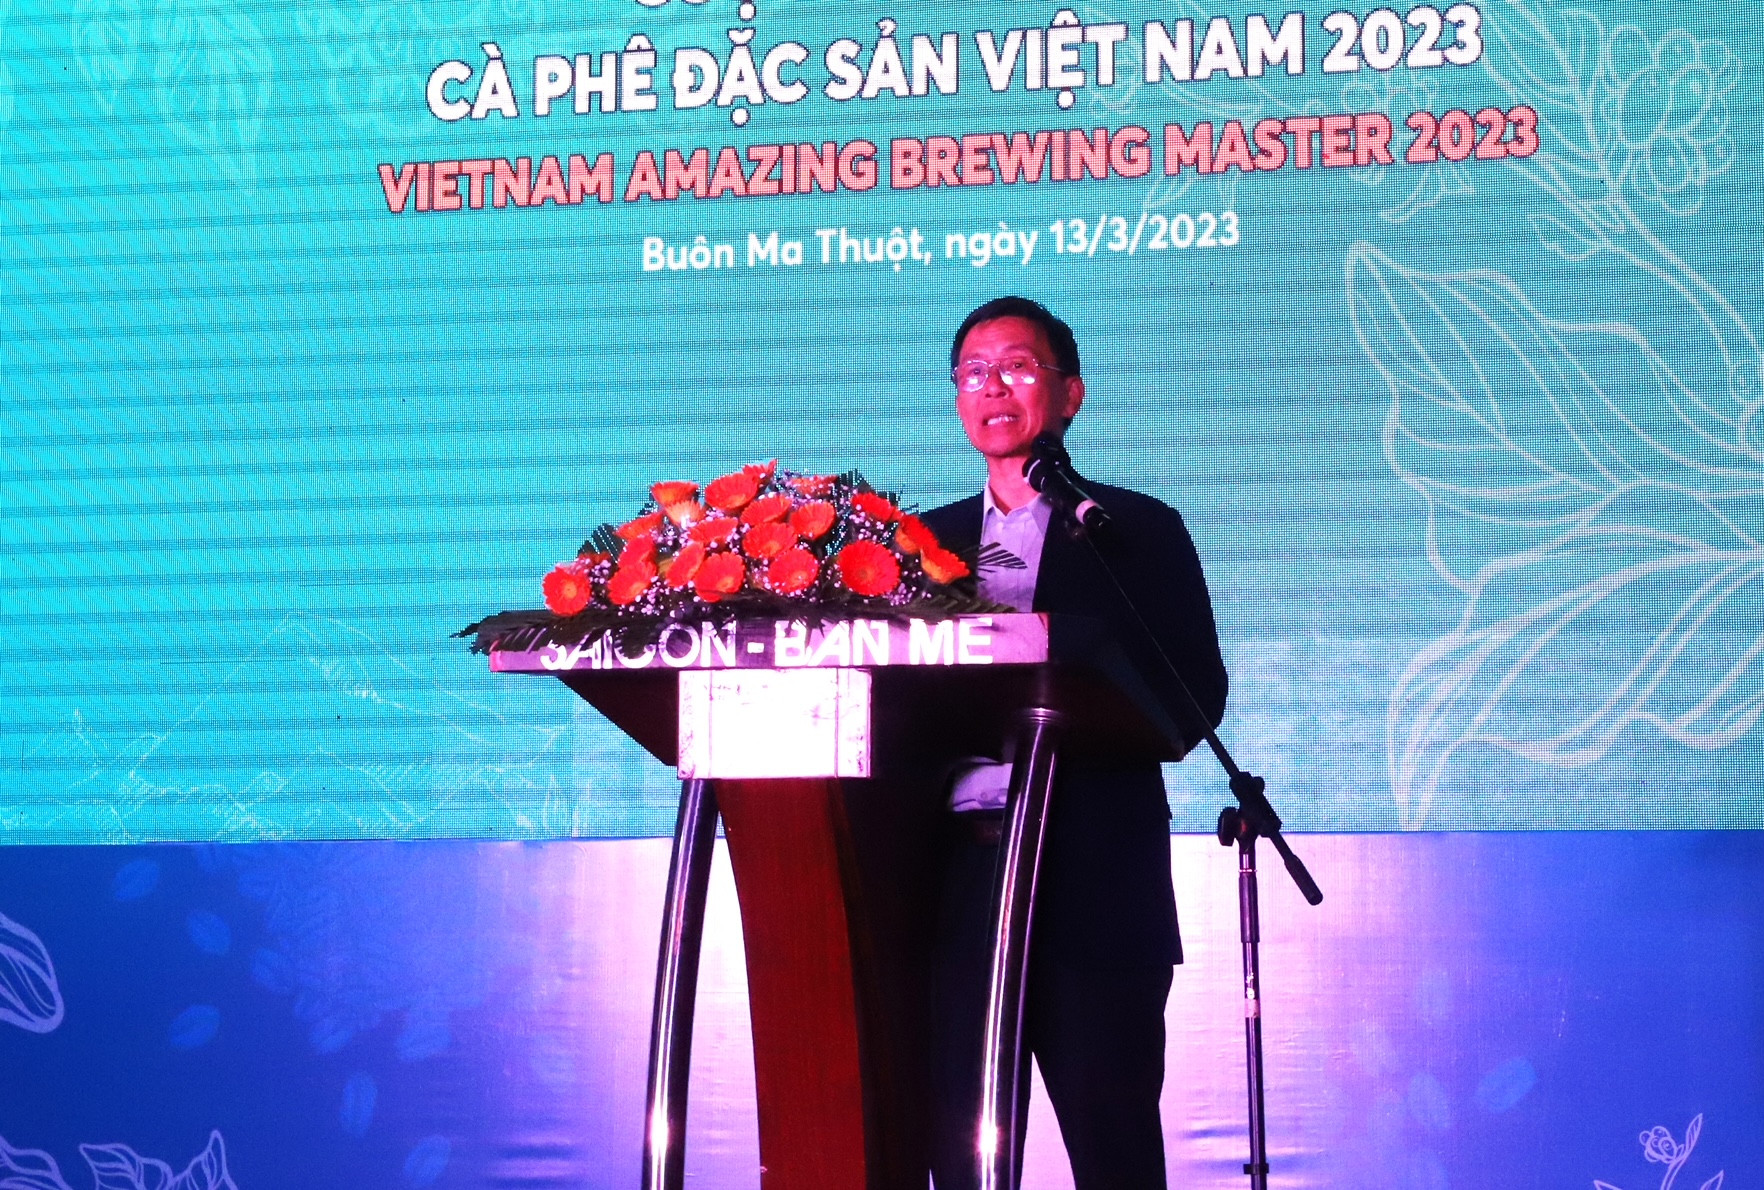 Chủ tịch Hiệp hội Cà-phê Buôn Ma Thuột Trịnh Đức Minh, Trưởng Ban tổ chức Cuộc thi pha chế cà-phê đặc sản Việt Nam năm 2023 phát biểu bế mạc cuộc thi.